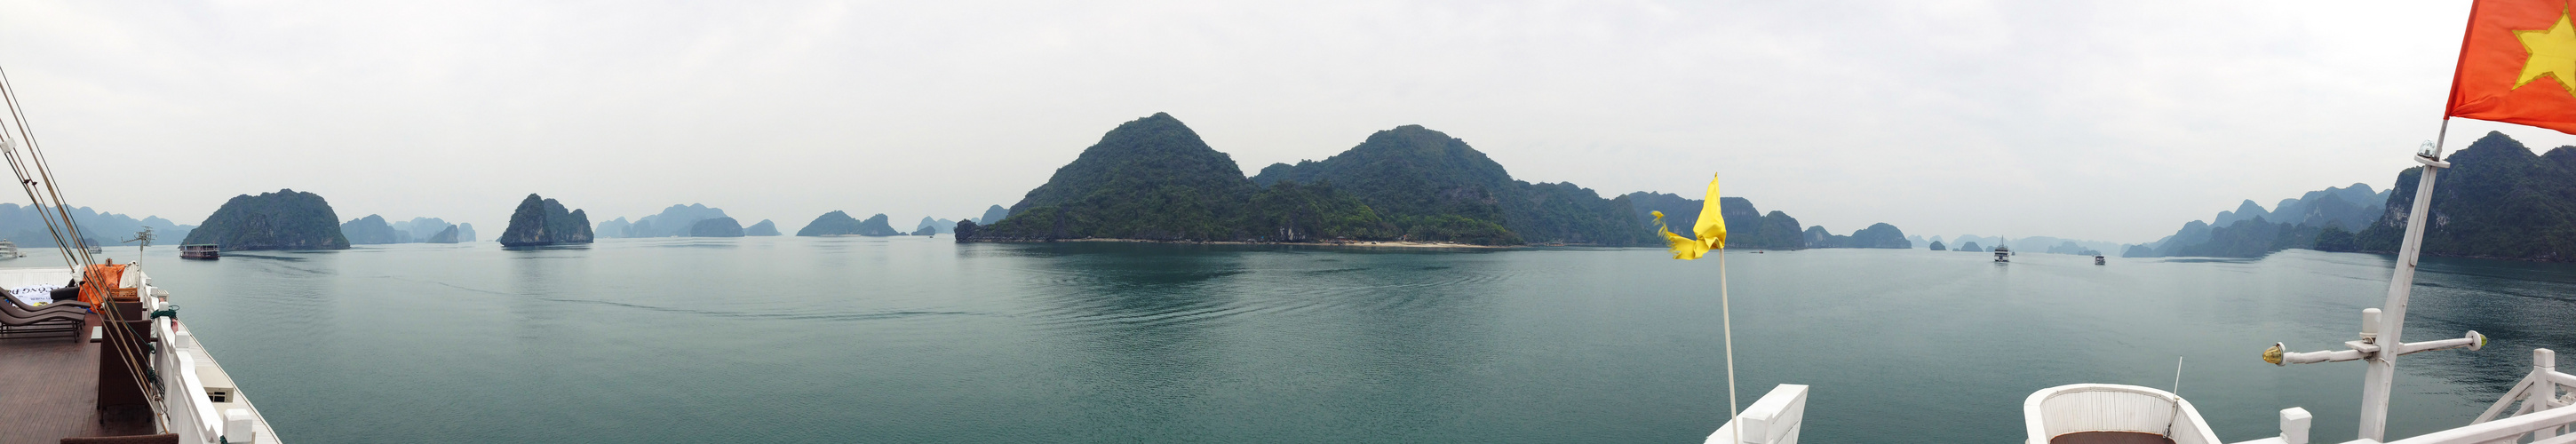 Ha Long Bucht Vietnam